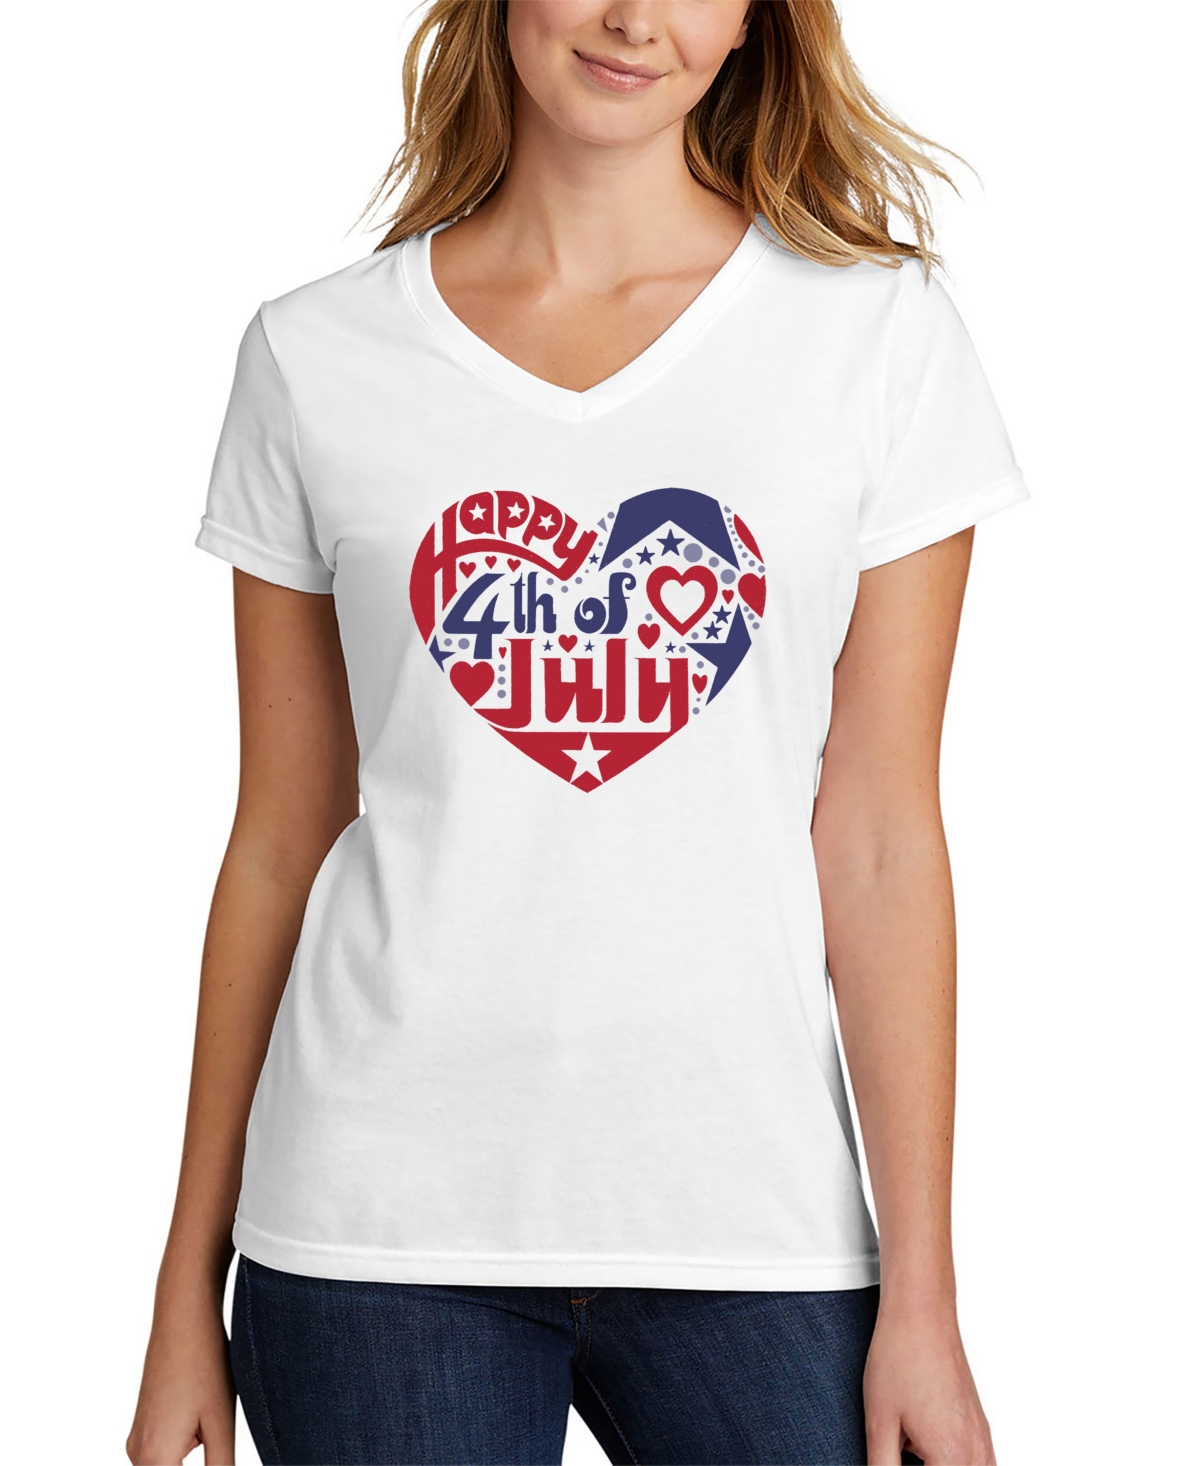 Women's July 4th Heart Word Art V-neck T-shirt - White